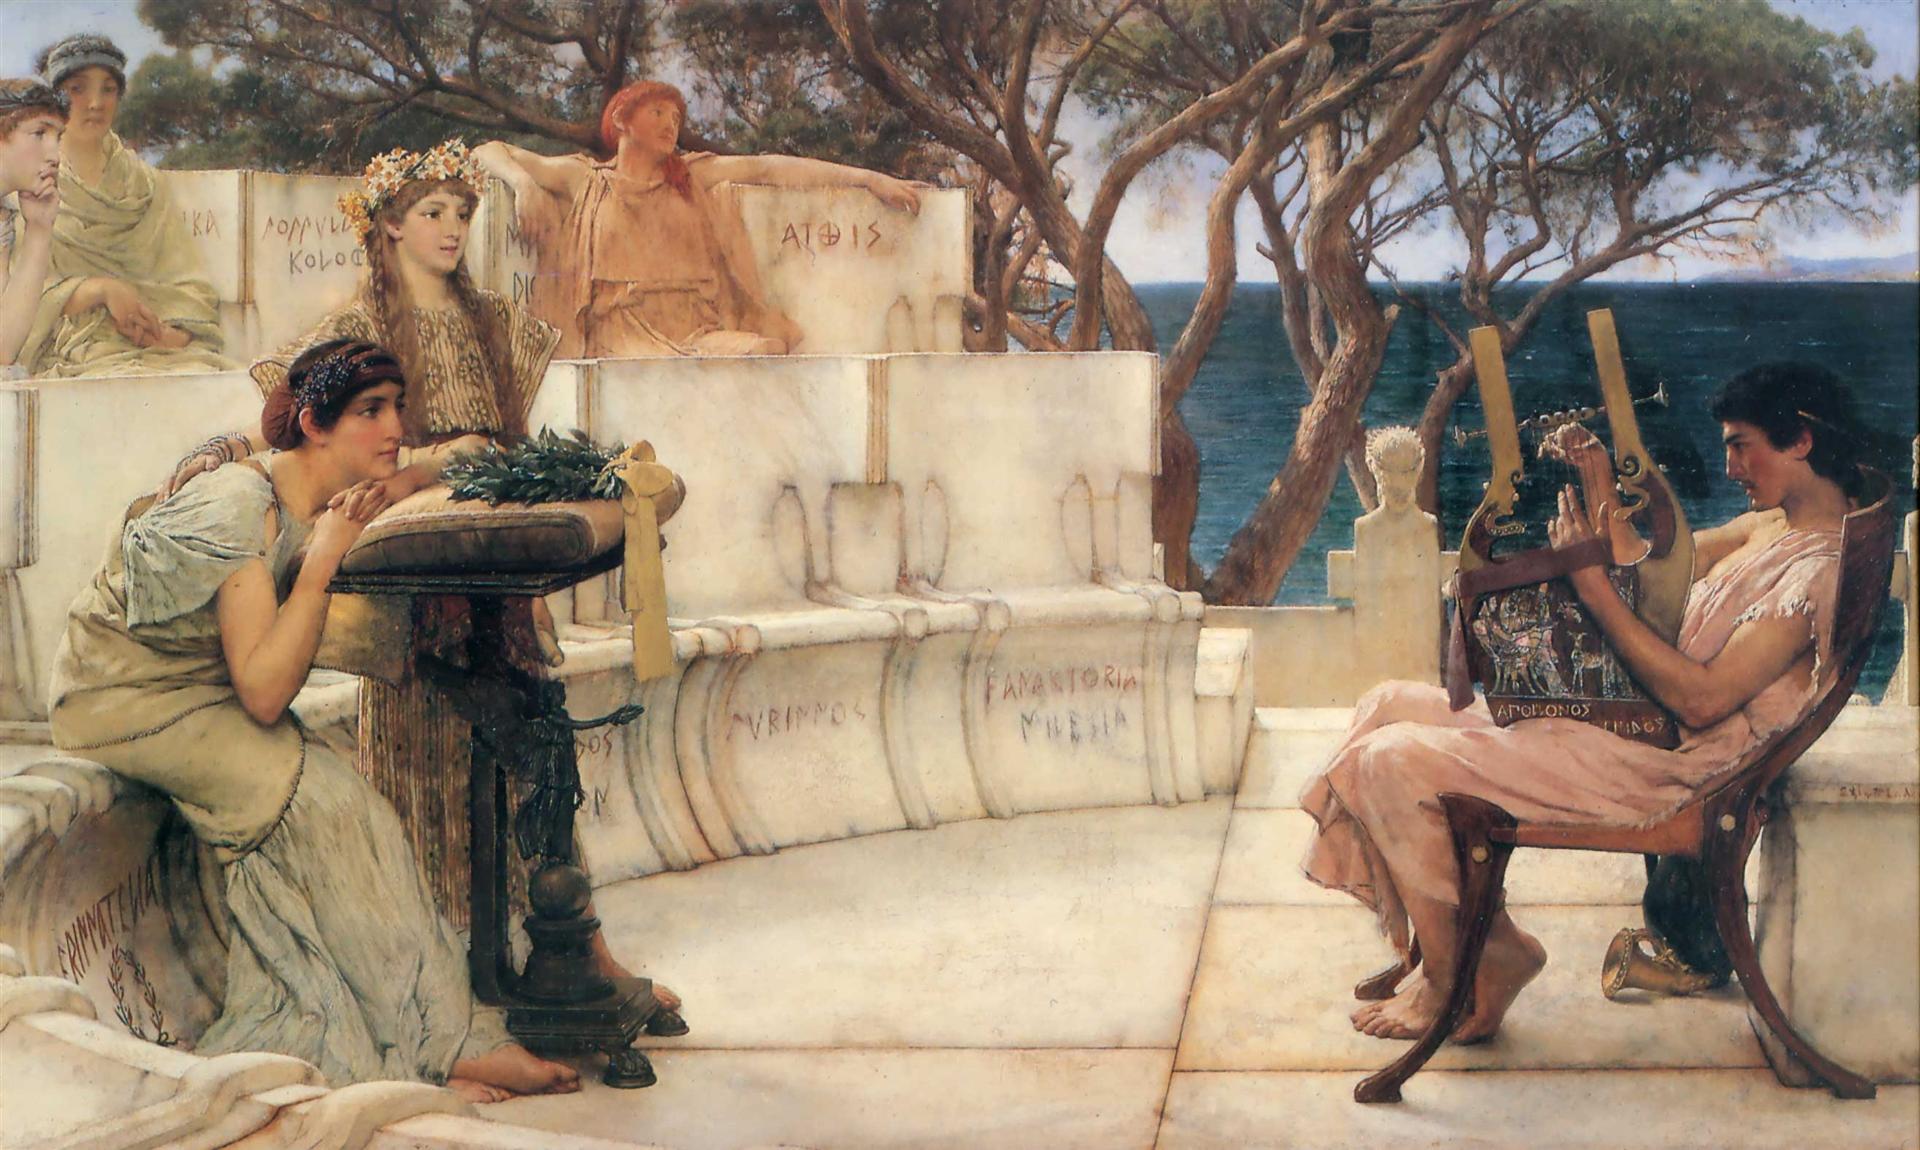 Greek women in a theater watching